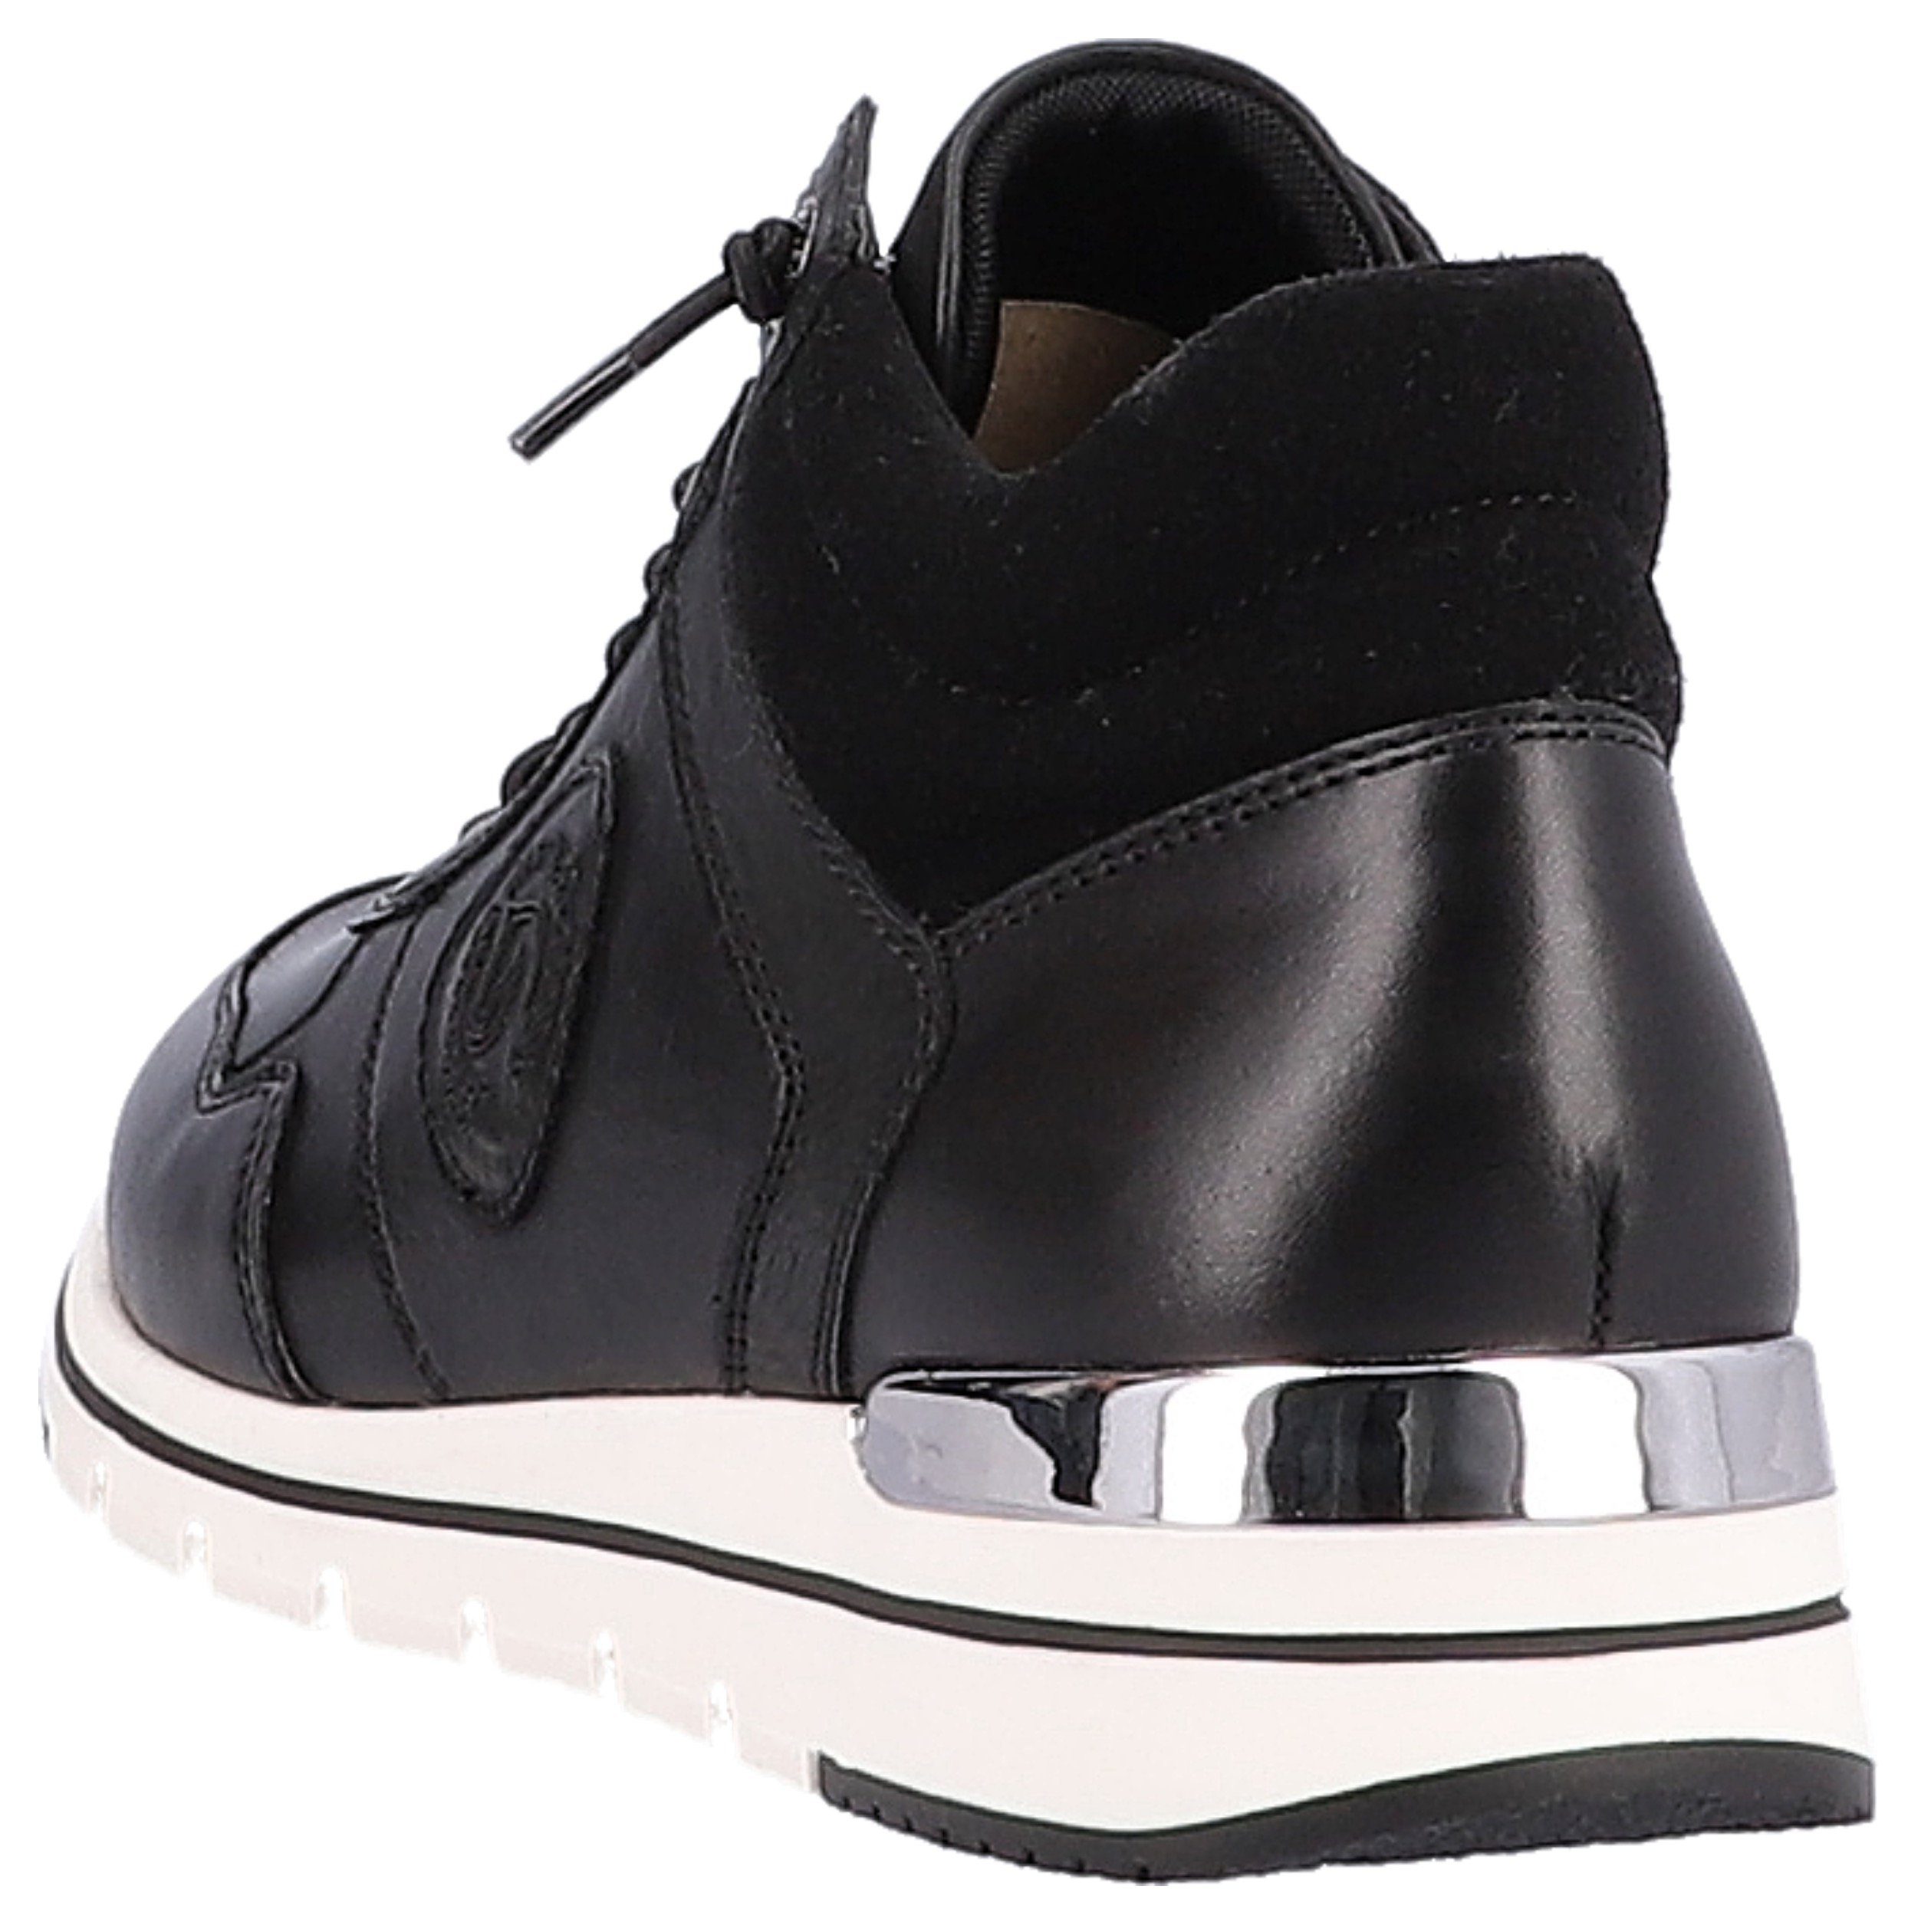 Remonte Slip-On Wechselfußbett mit praktischem Sneaker schwarz